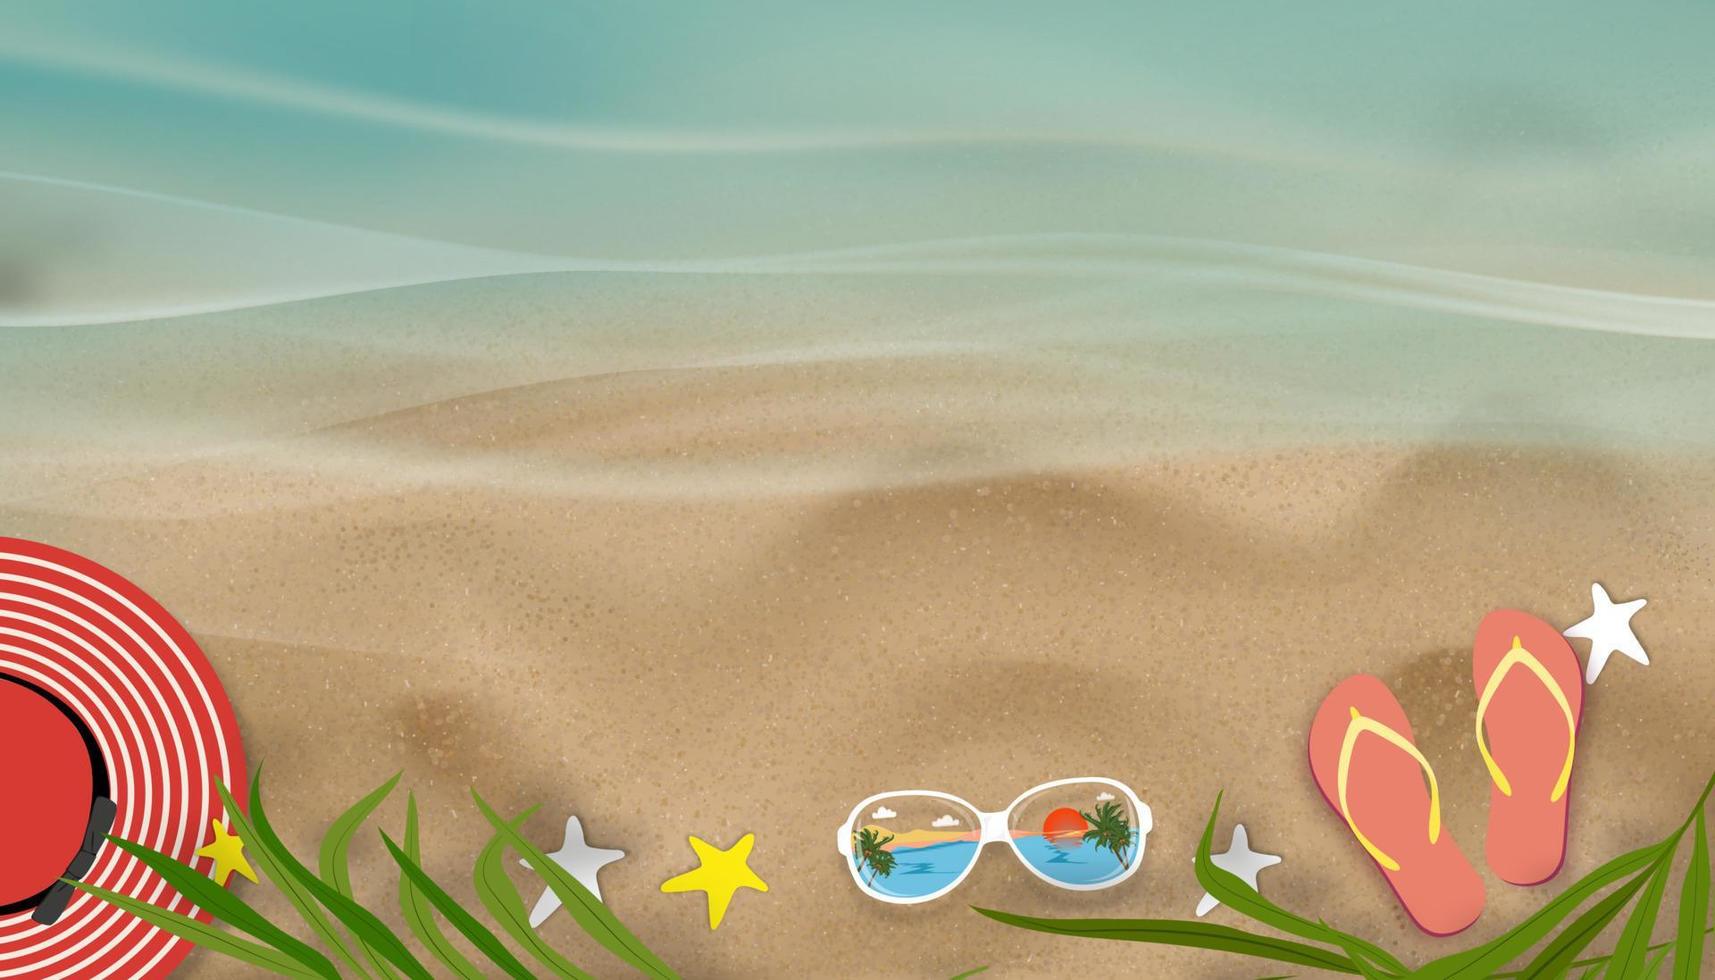 sommerhintergrund mit sandale am sandstrand, hutpalmenblattschatten, blaue ozeanwelle am sonntag, sonnenbrille und am strand, draufsichtvektorillustrationsbanner mit urlaubsferienkonzept vektor